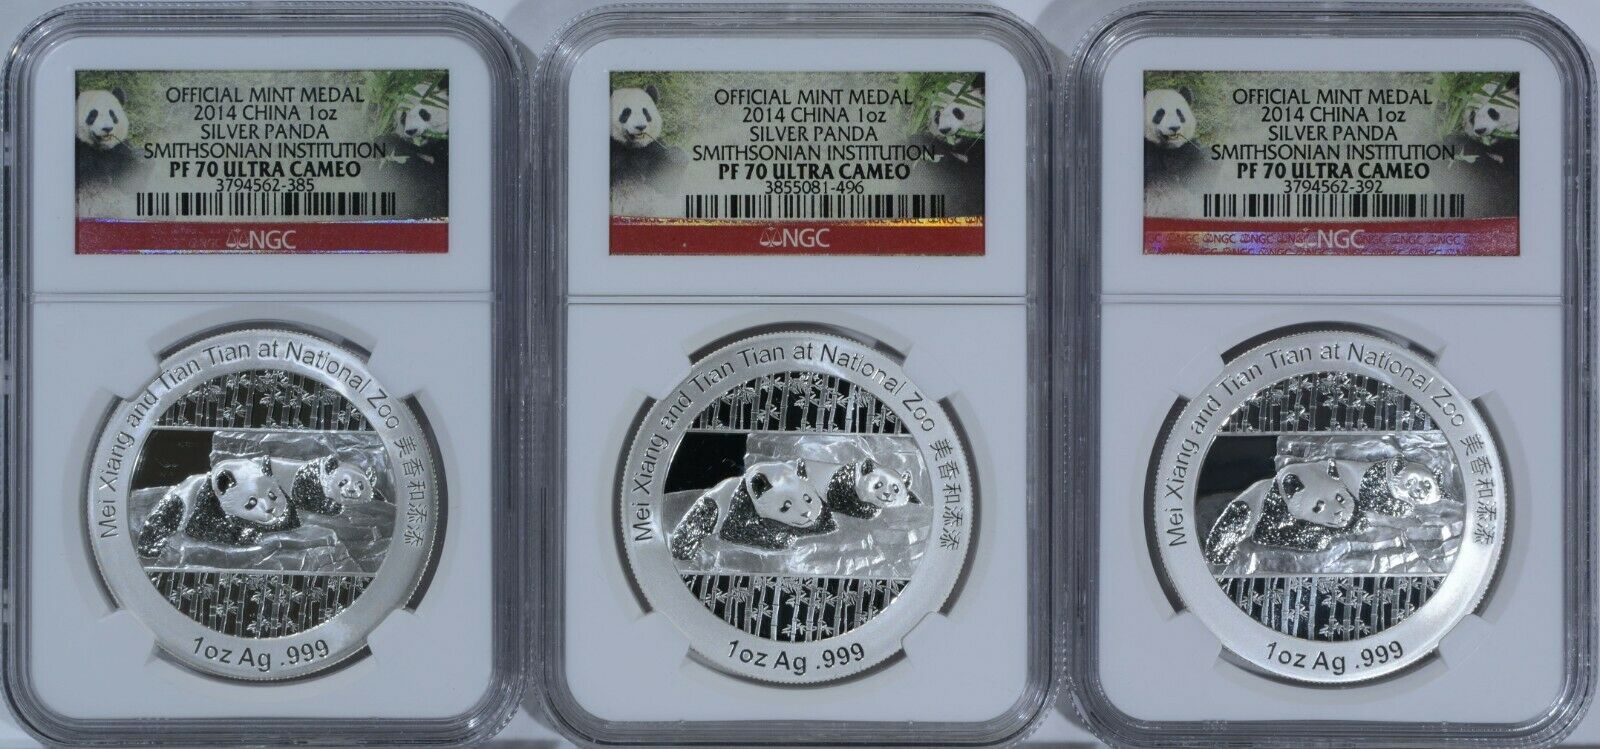 2014 China 1oz Mei Xiang Tian Smithsonian Zoo Silver Panda Medal Ngc Pr 70 3pc